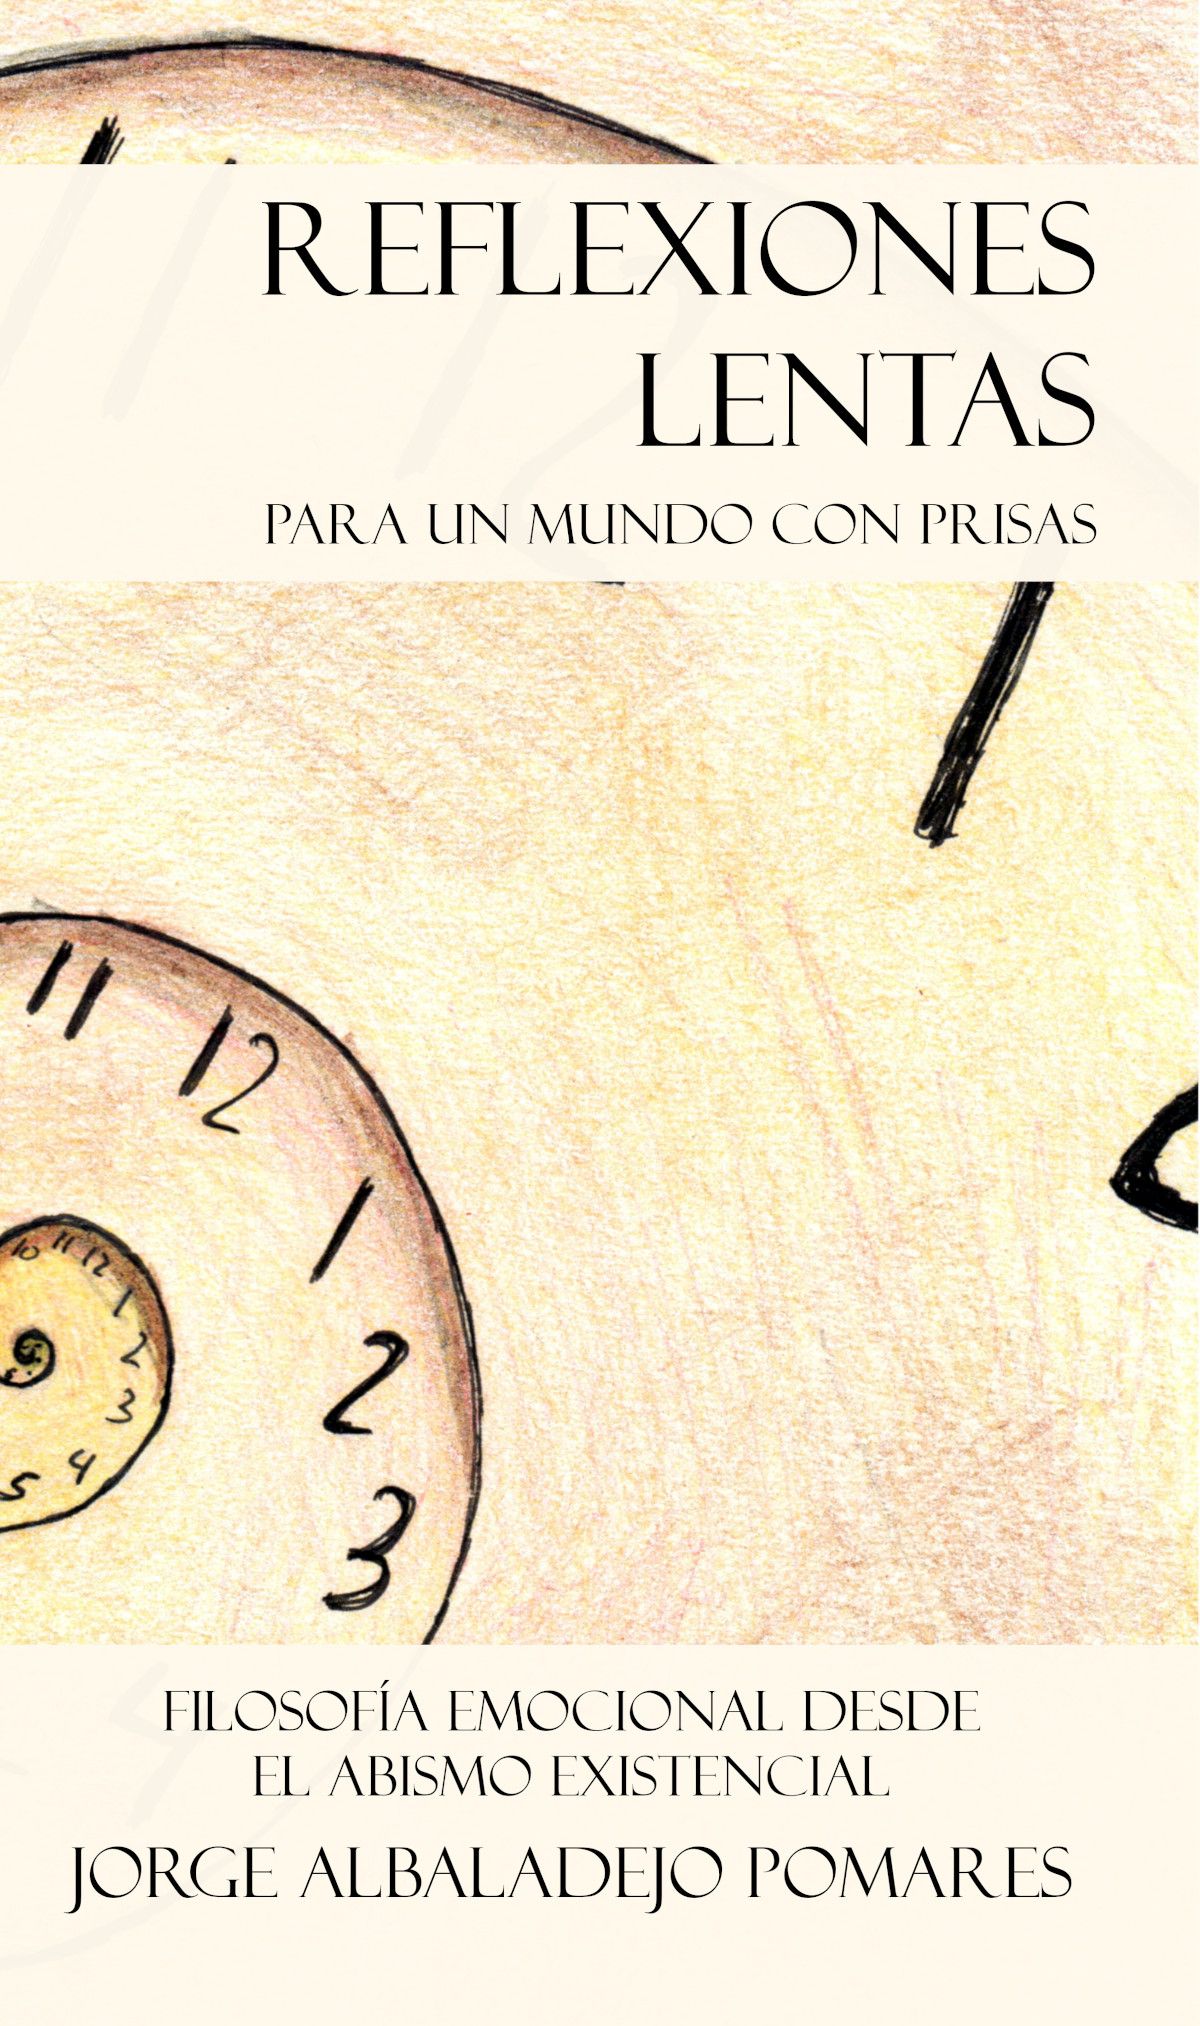 El escritor Jorge Albaladejo publica su nuevo libro ?Reflexiones lentas para un mundo con prisas?